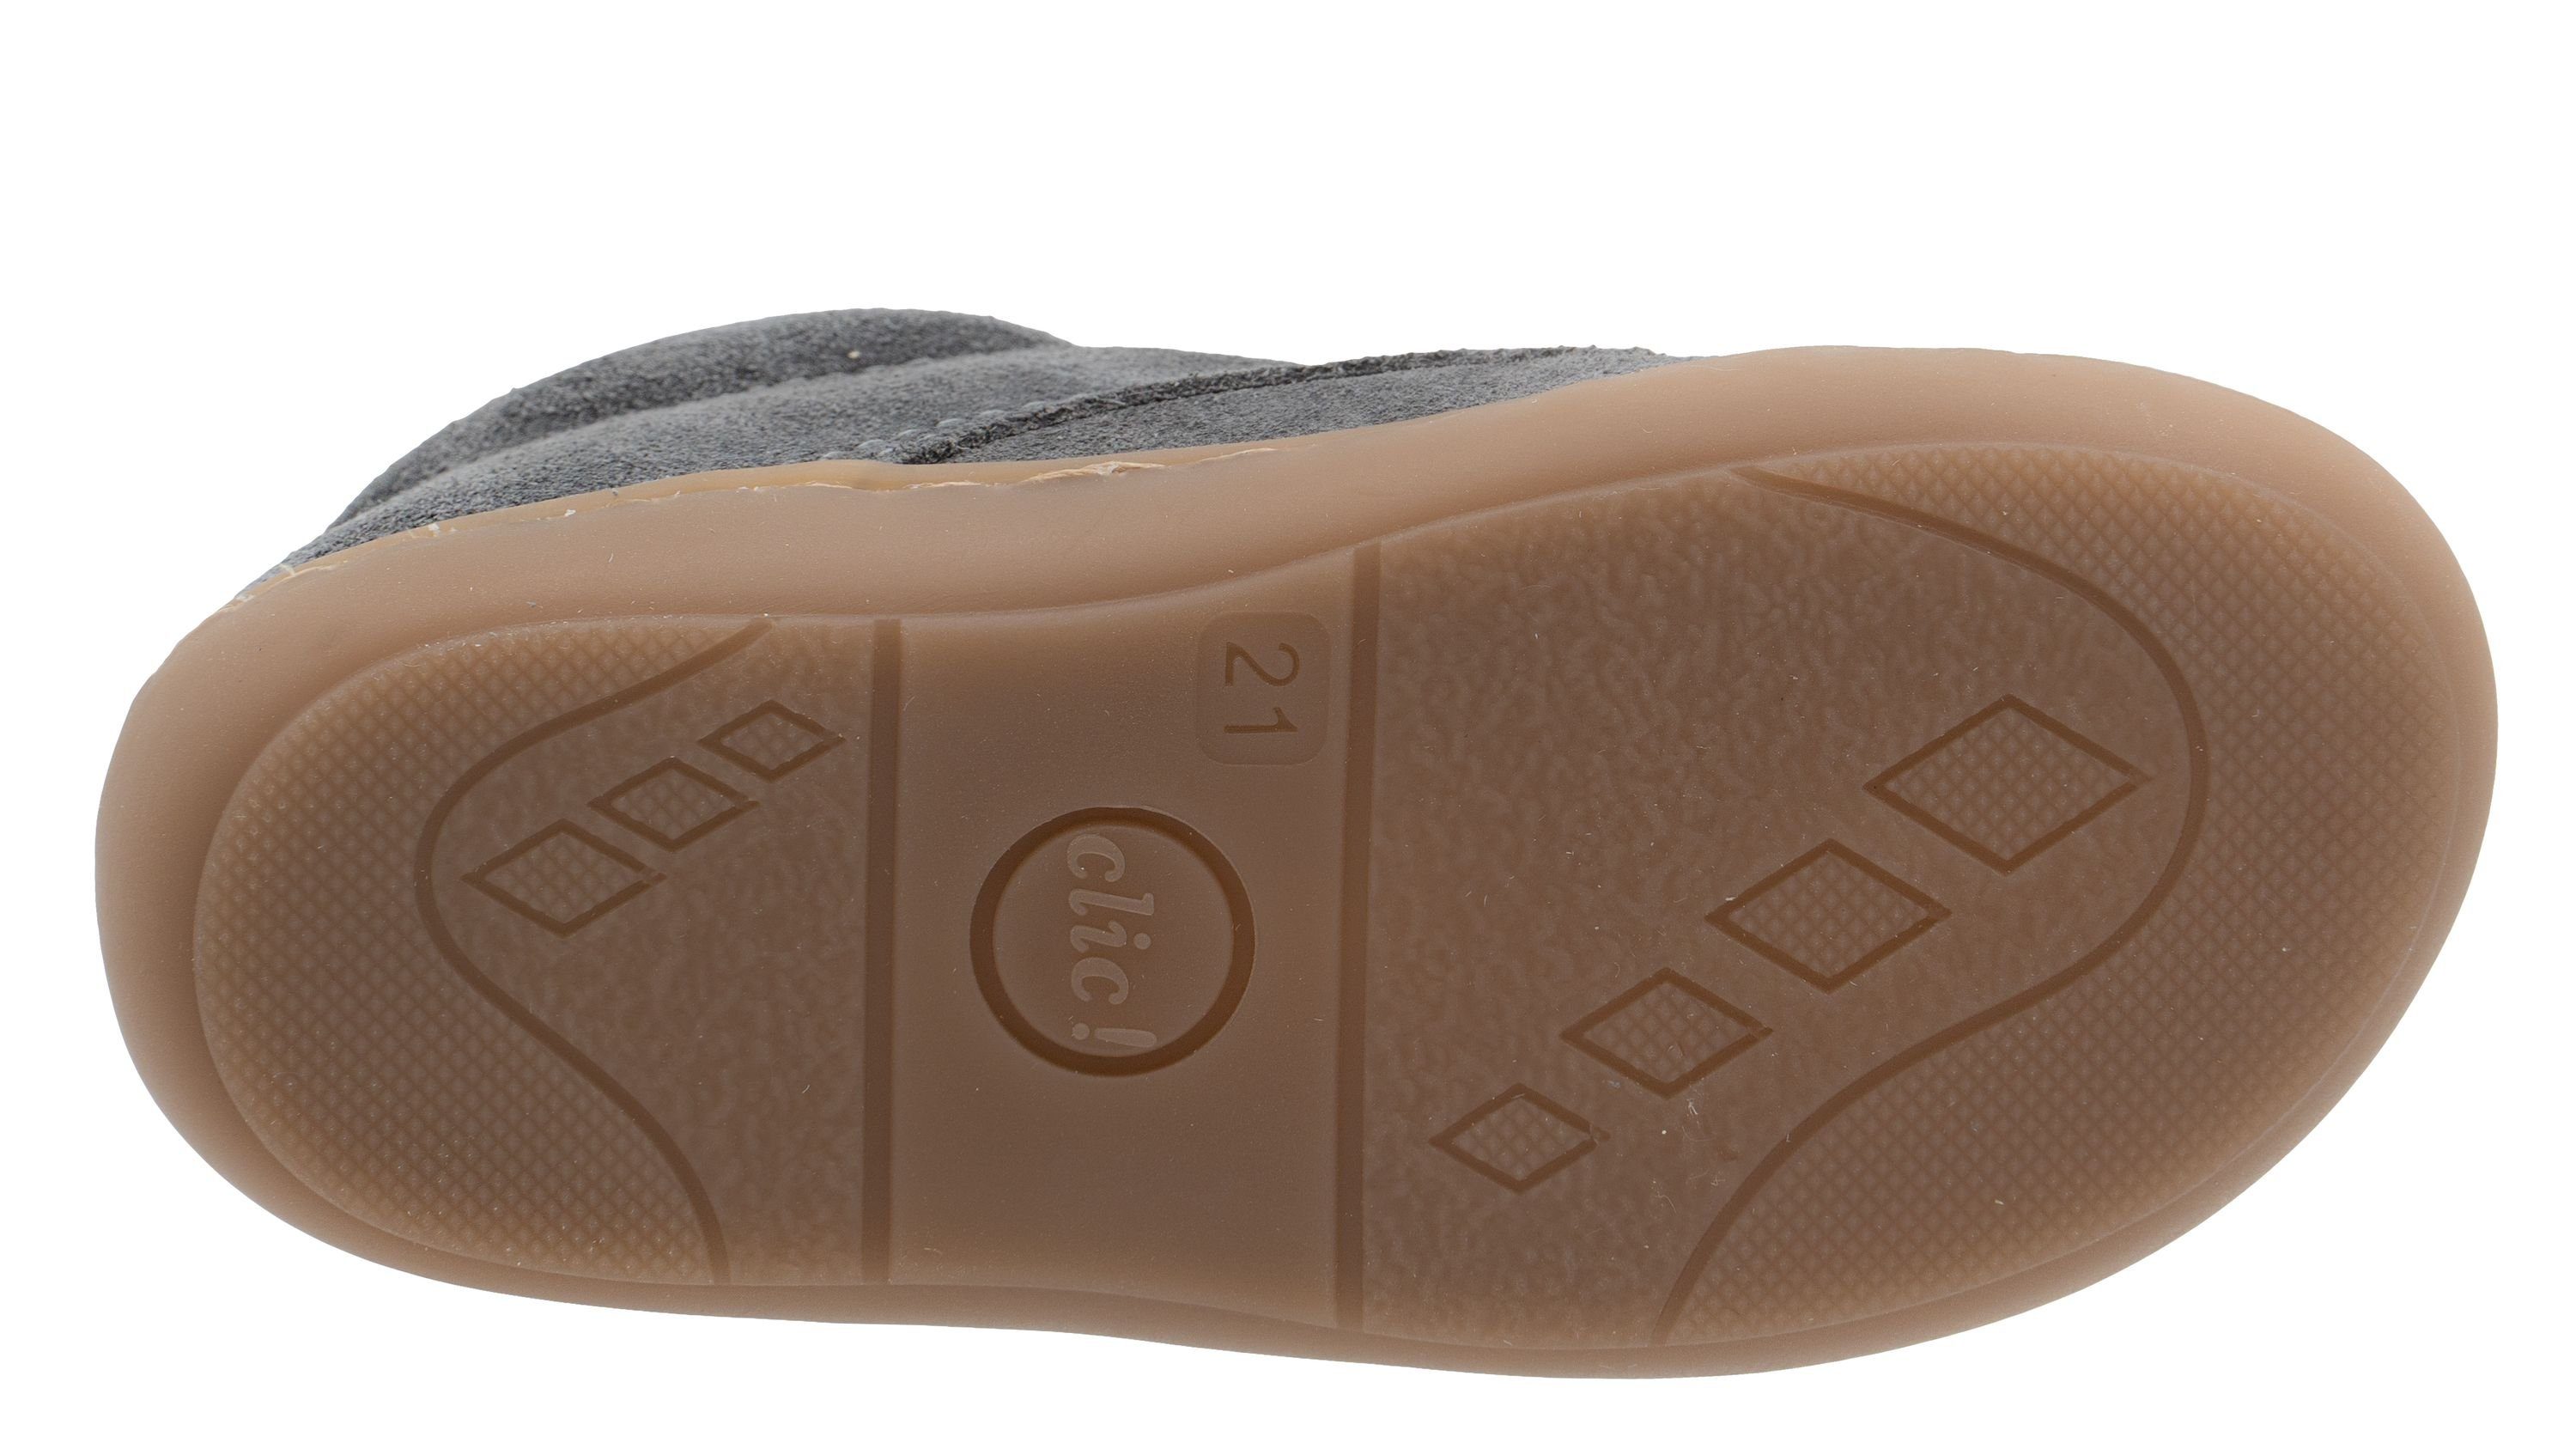 Kinder Clic aus Grau Schuhe für Lauflernschuhe 9291 Schnürschuh Clic Leder